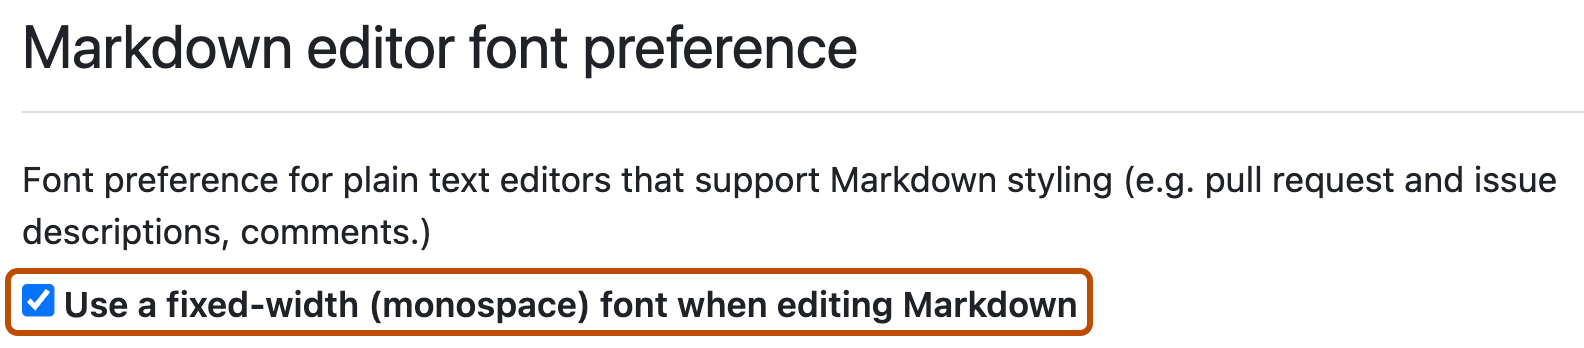 Снимок экрана: параметры пользователя GitHub для настройки Markdown. Флажок для использования шрифта фиксированной ширины в Markdown установлен и выделен темно-оранжевым цветом.